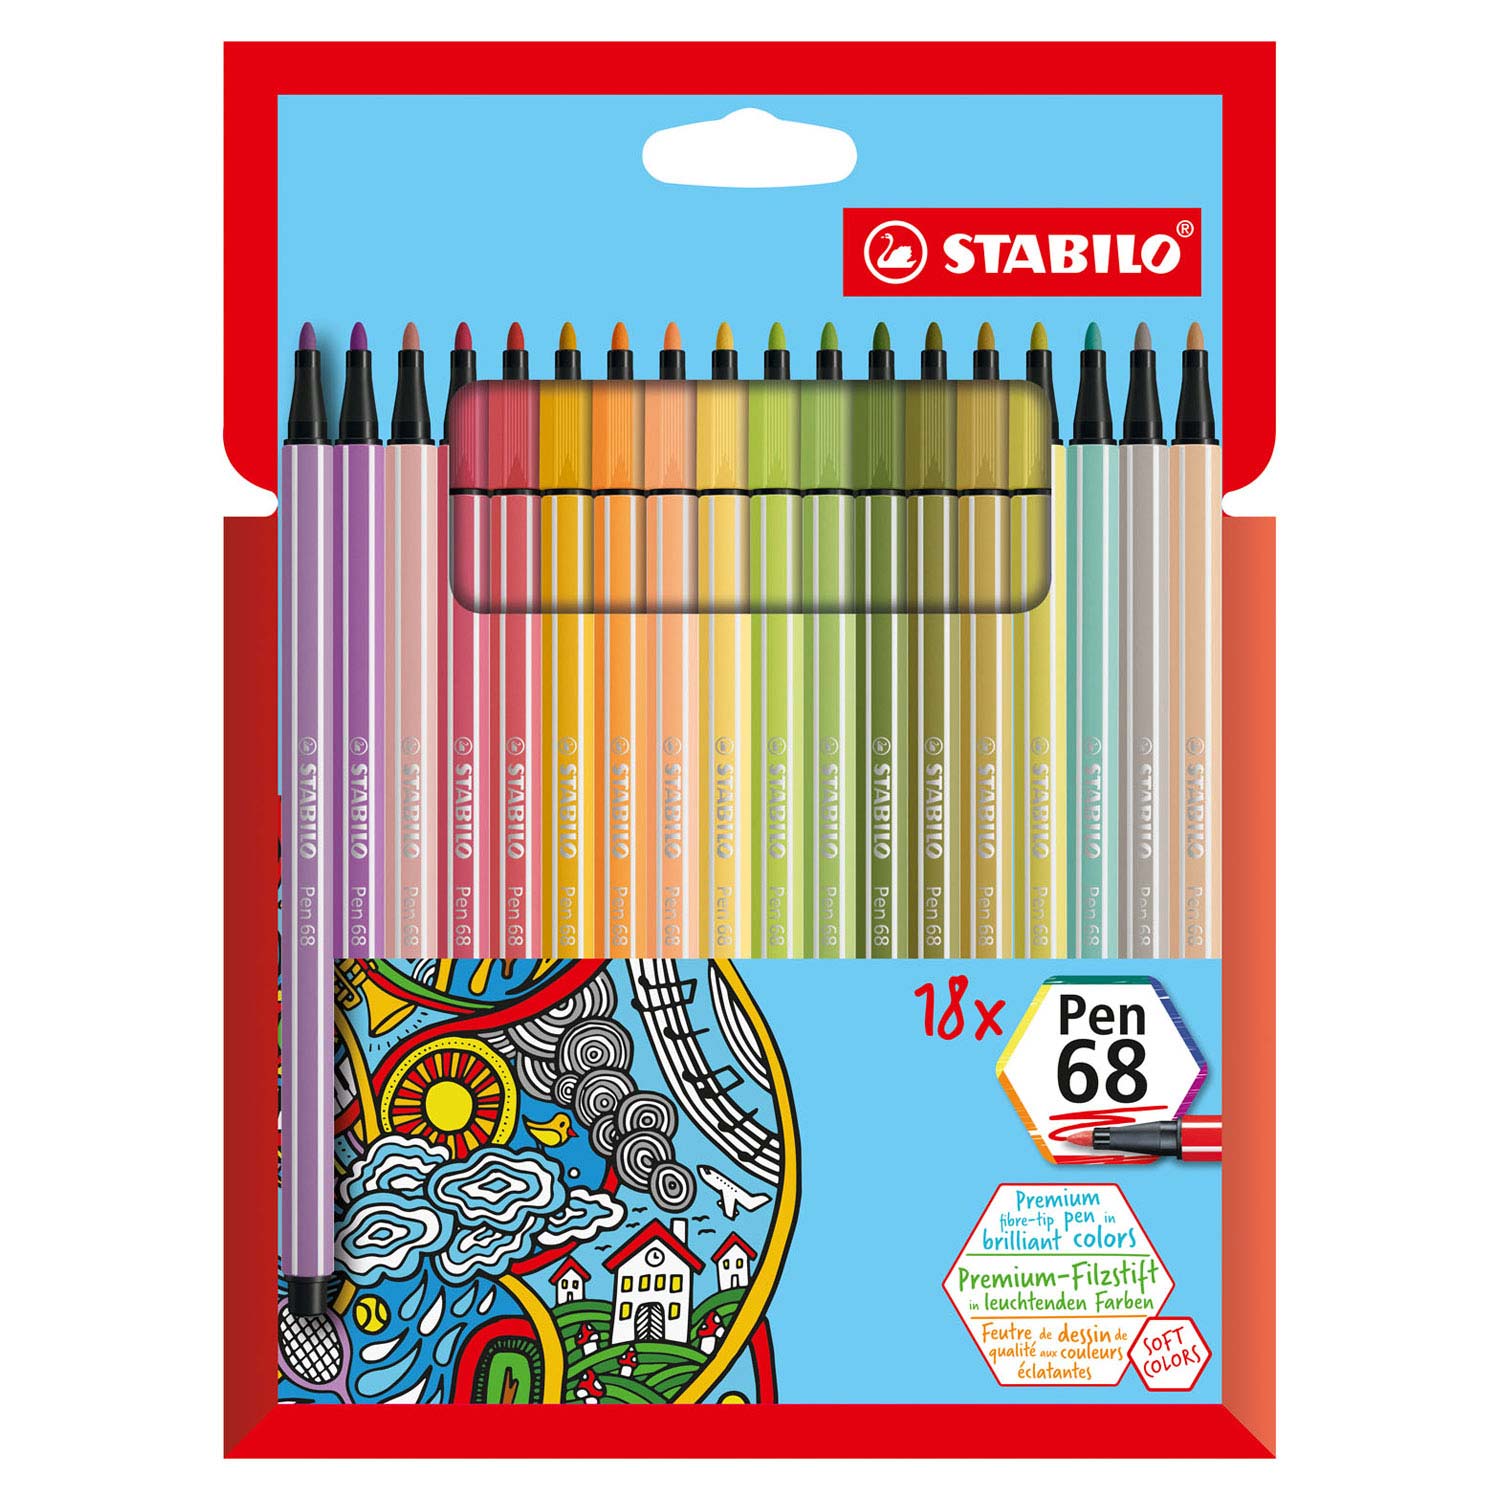 onderpand voorstel leven STABILO Pen 68 Felt-tip pens, 18 pcs. | Thimble Toys